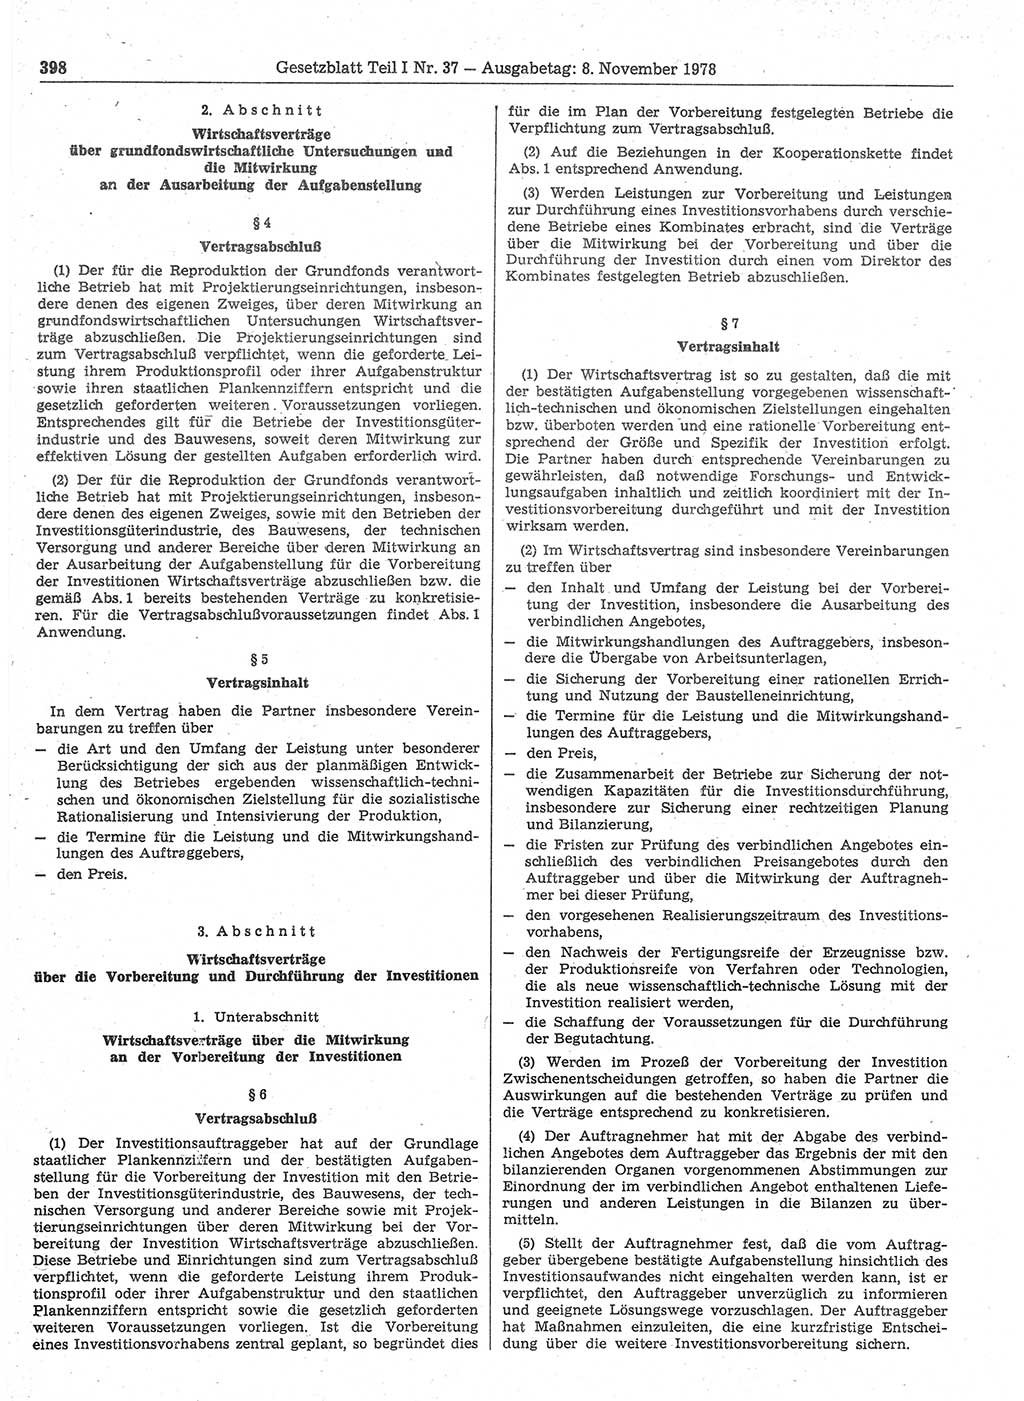 Gesetzblatt (GBl.) der Deutschen Demokratischen Republik (DDR) Teil Ⅰ 1978, Seite 398 (GBl. DDR Ⅰ 1978, S. 398)